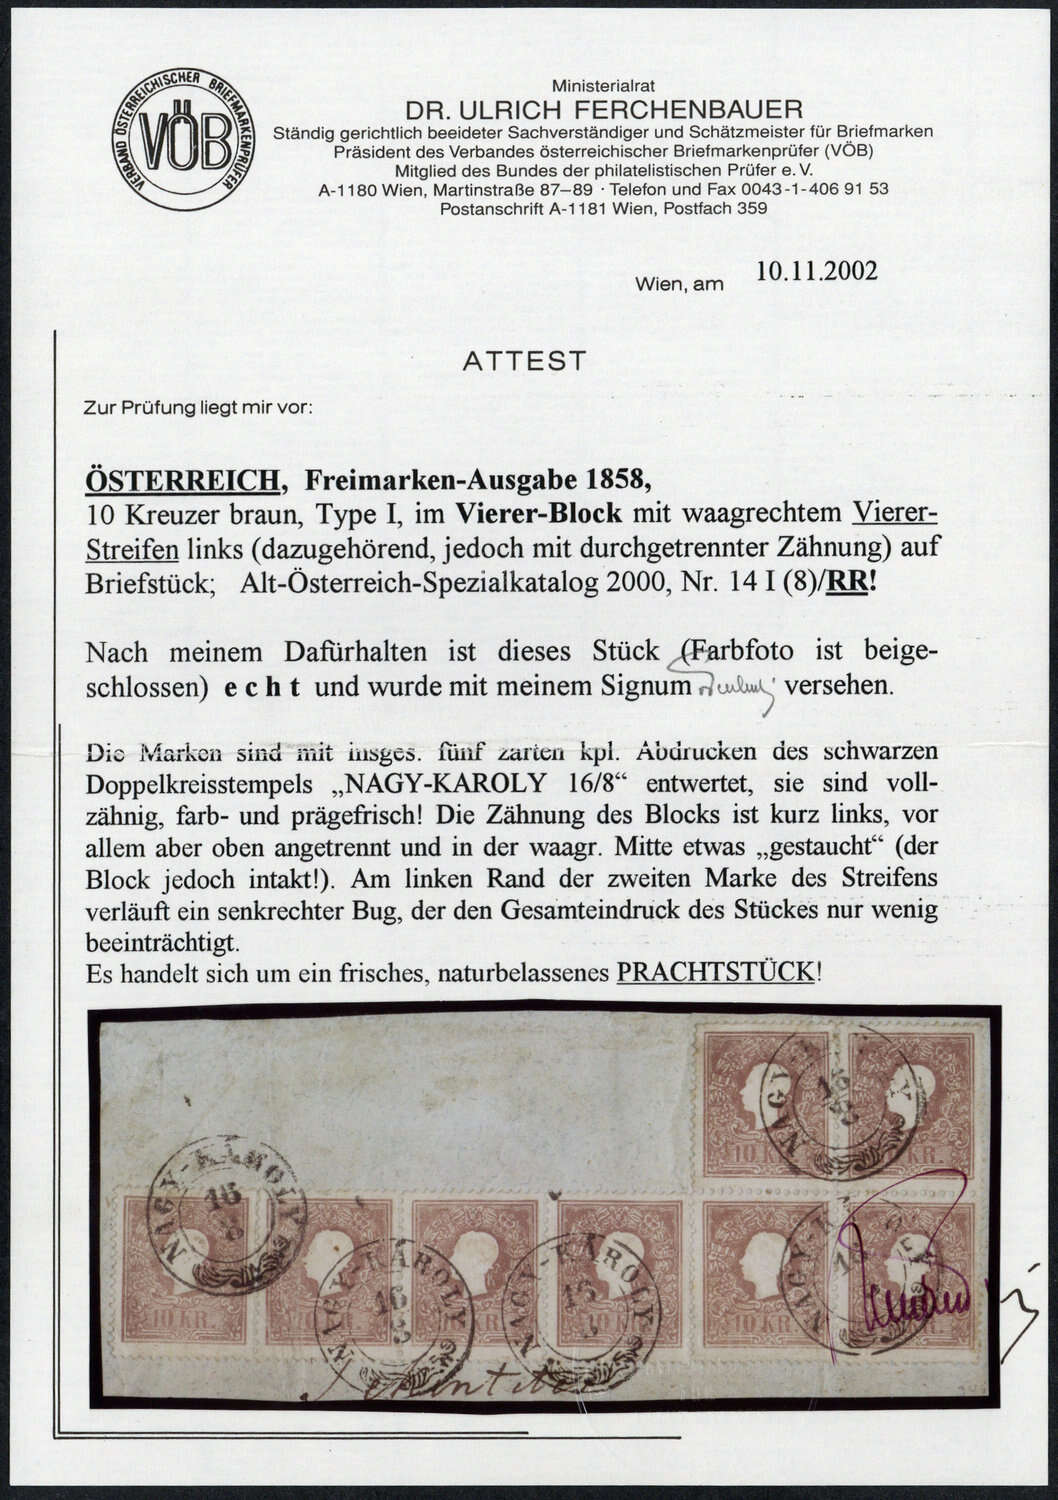 Lot 507 - europa österreich -  Deutsche Briefmarken AG 6th Large Lot Auction Deutsche Briefmarken AG